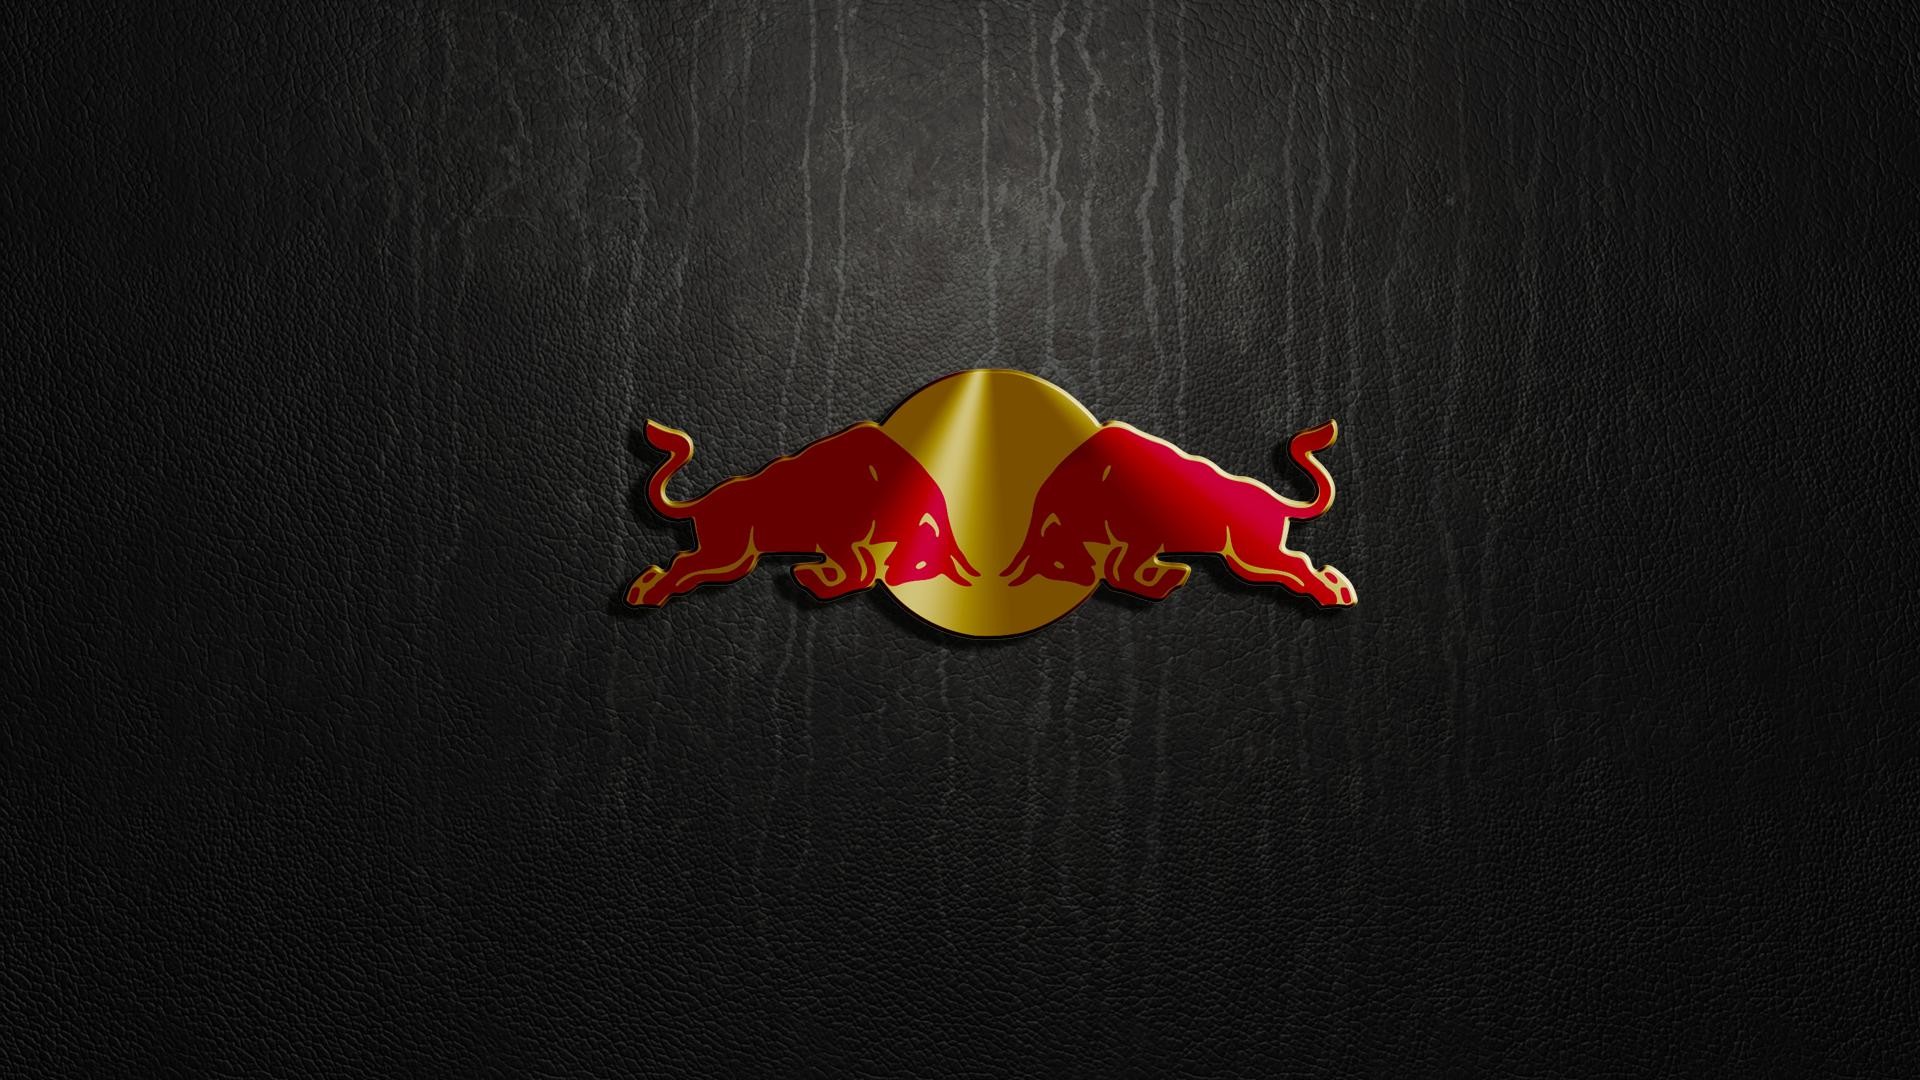 1920x1080 Red Bull Logo wallpaper.